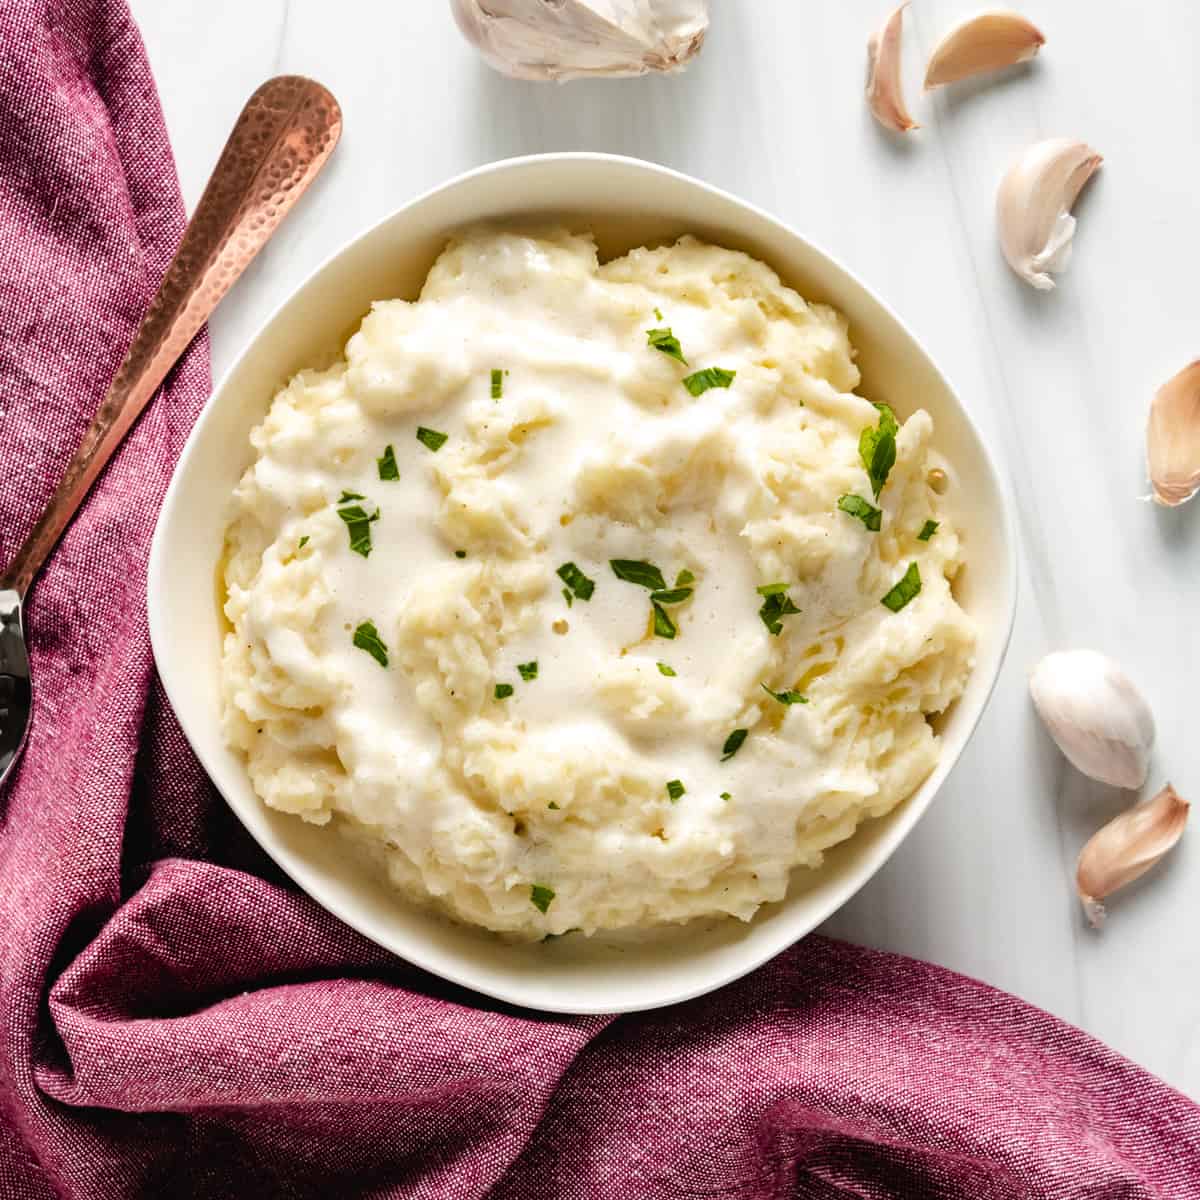 Garlic mashed potatoes